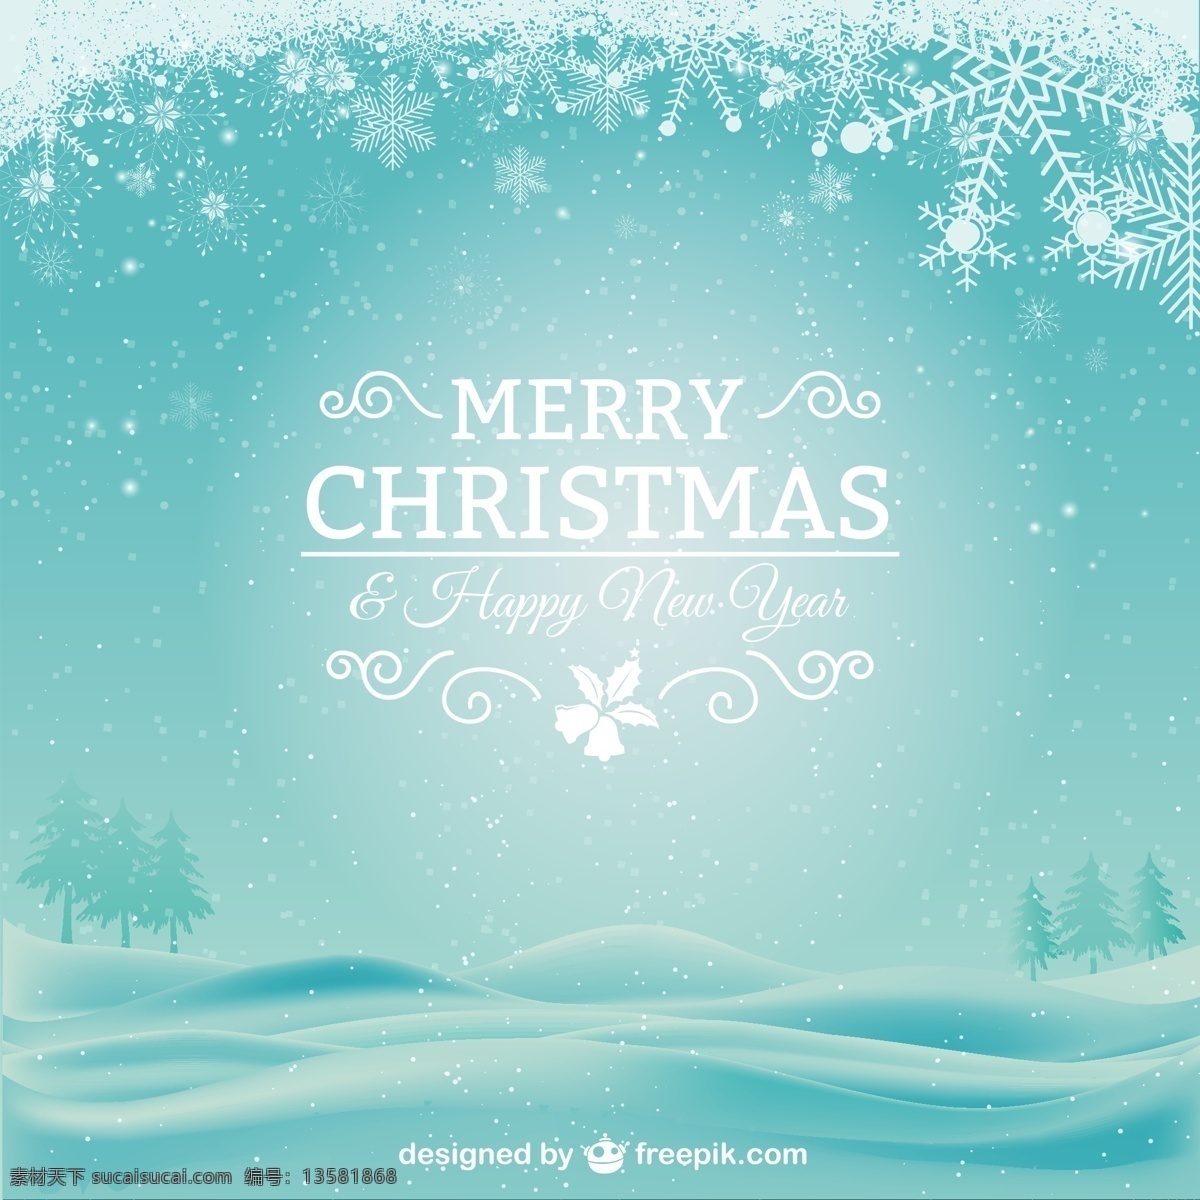 白雪皑皑 圣诞 卡片 背景 快乐 新一年 雪花 圣诞快乐 圣诞节 冬季 新卡 新年 圣诞卡片 垂直